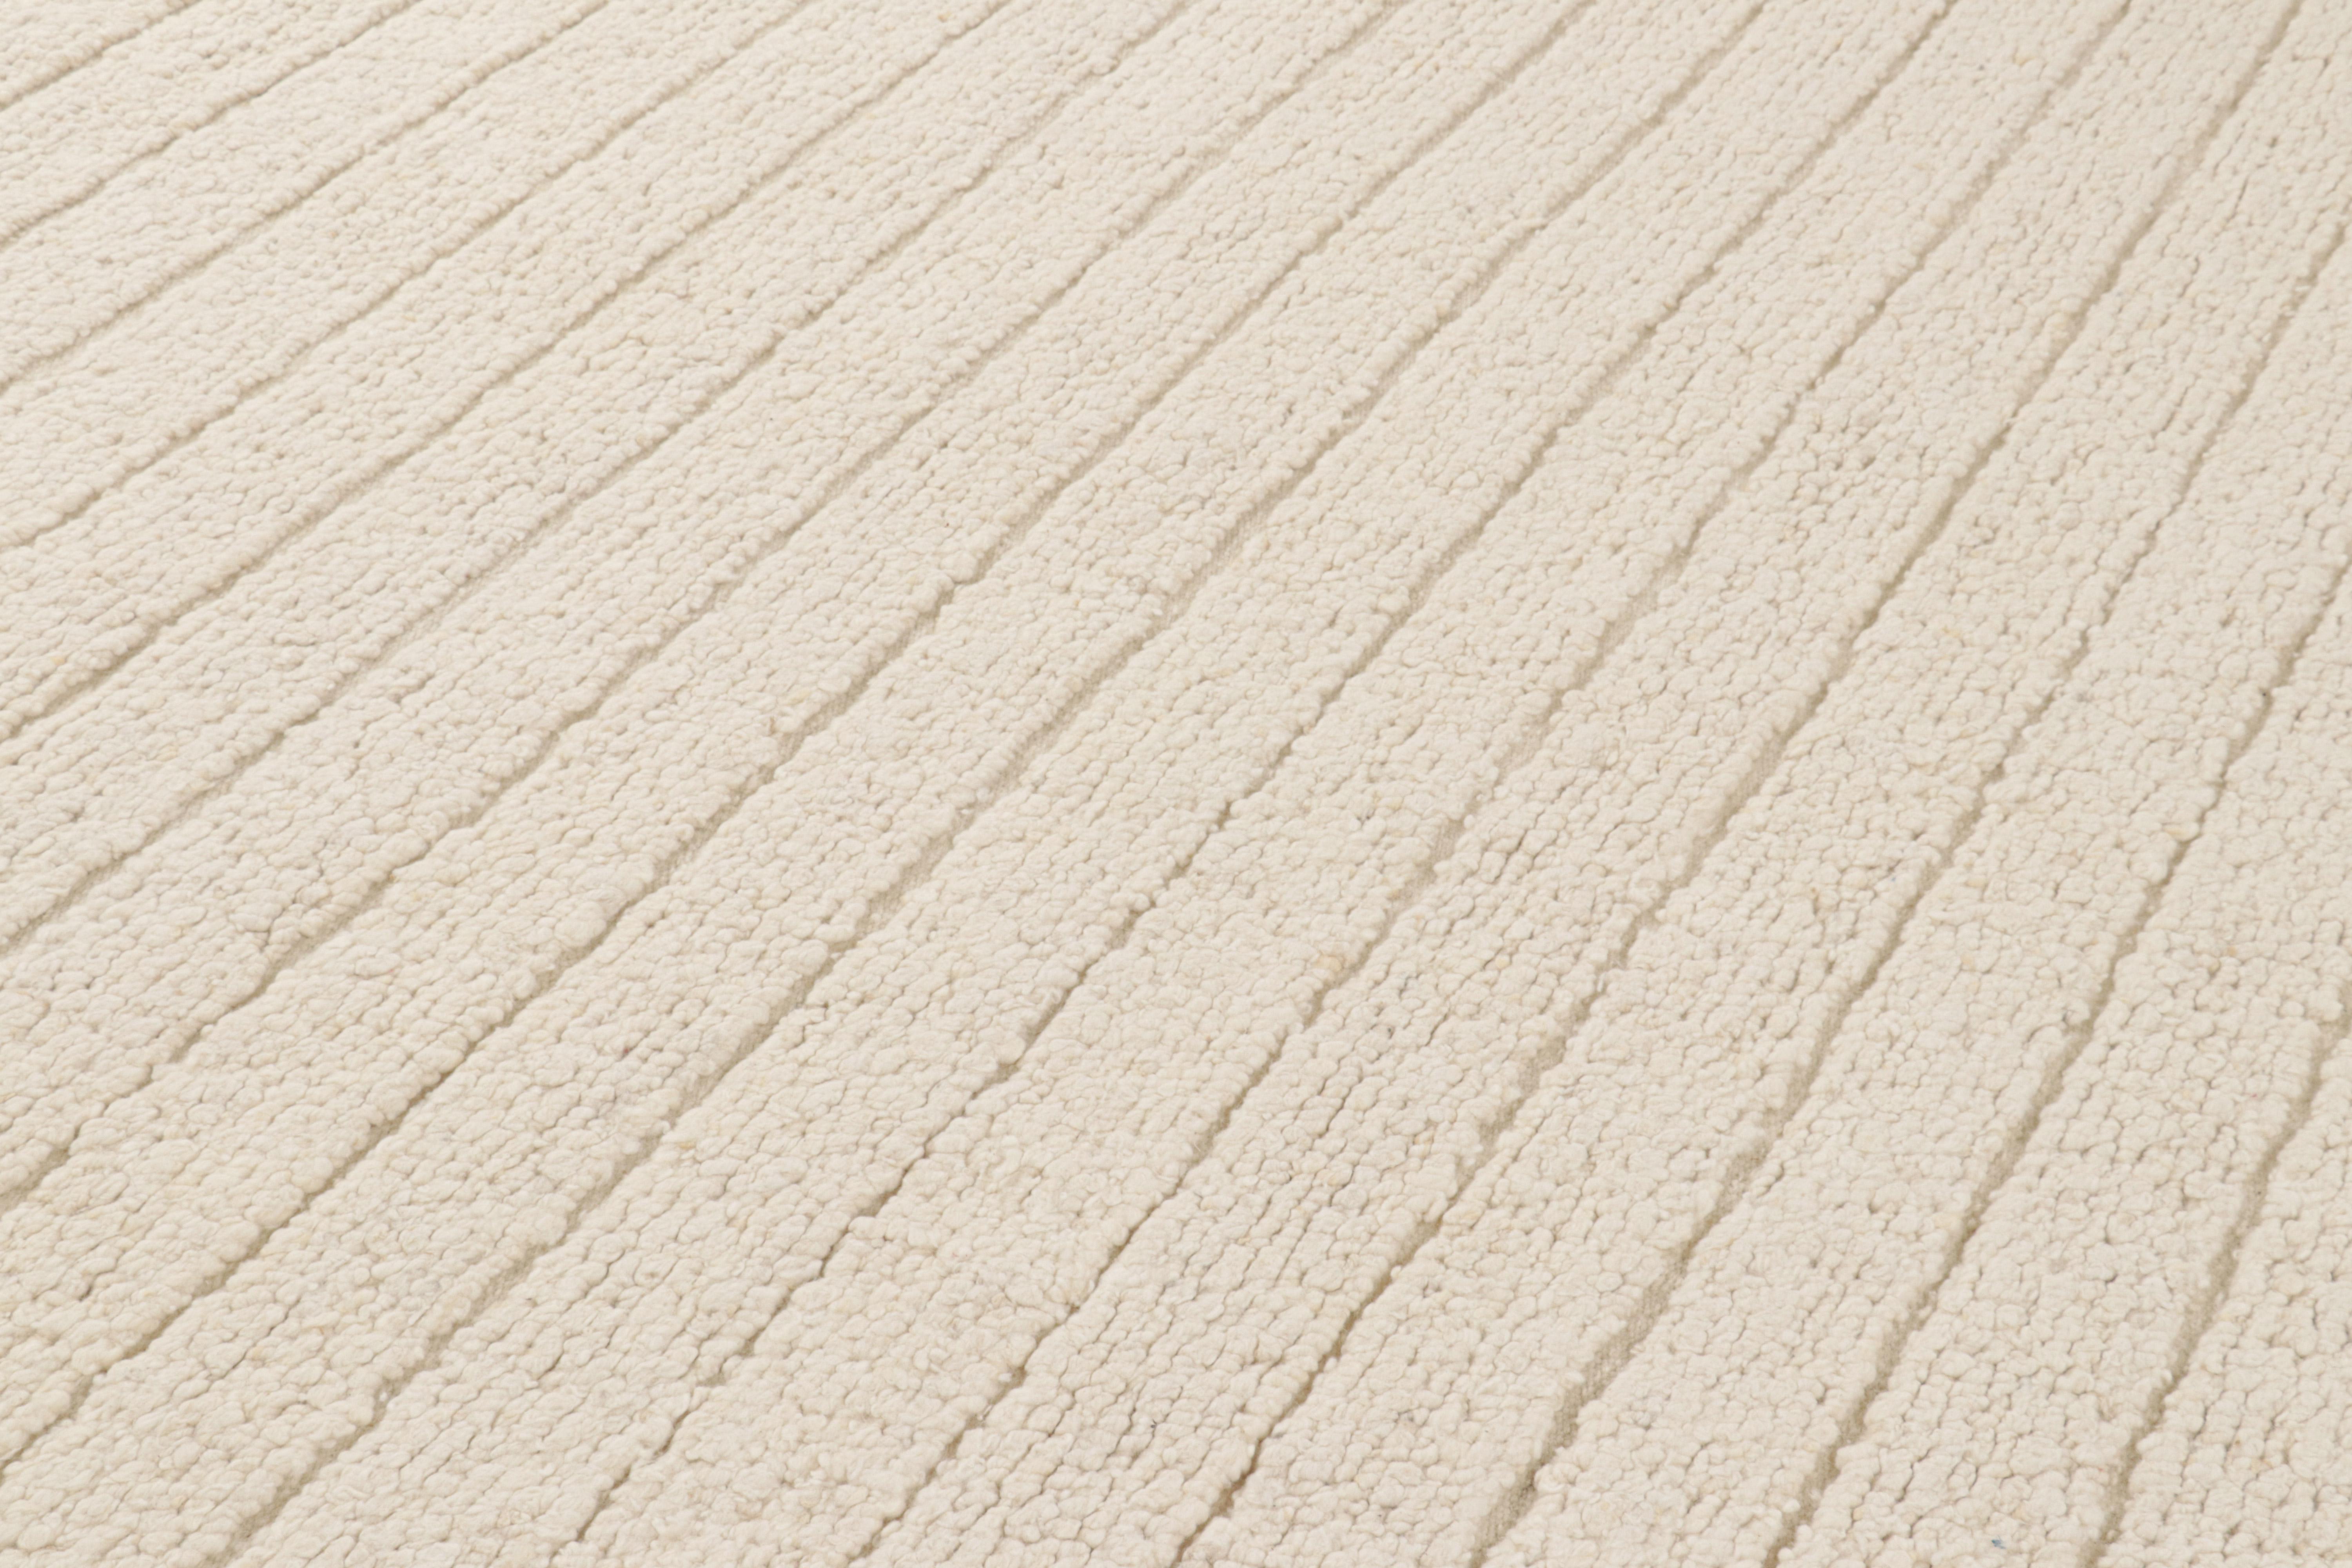 Dieser handgewebte 8x10-Kilim aus Wolle hat eine aufregende neue boucle-ähnliche Textur und stammt aus einer innovativen neuen zeitgenössischen Flachgewebe-Kollektion von Rug & Kilim'S Modern and Textural Rug Collections.

Über das Design: 

Weiße